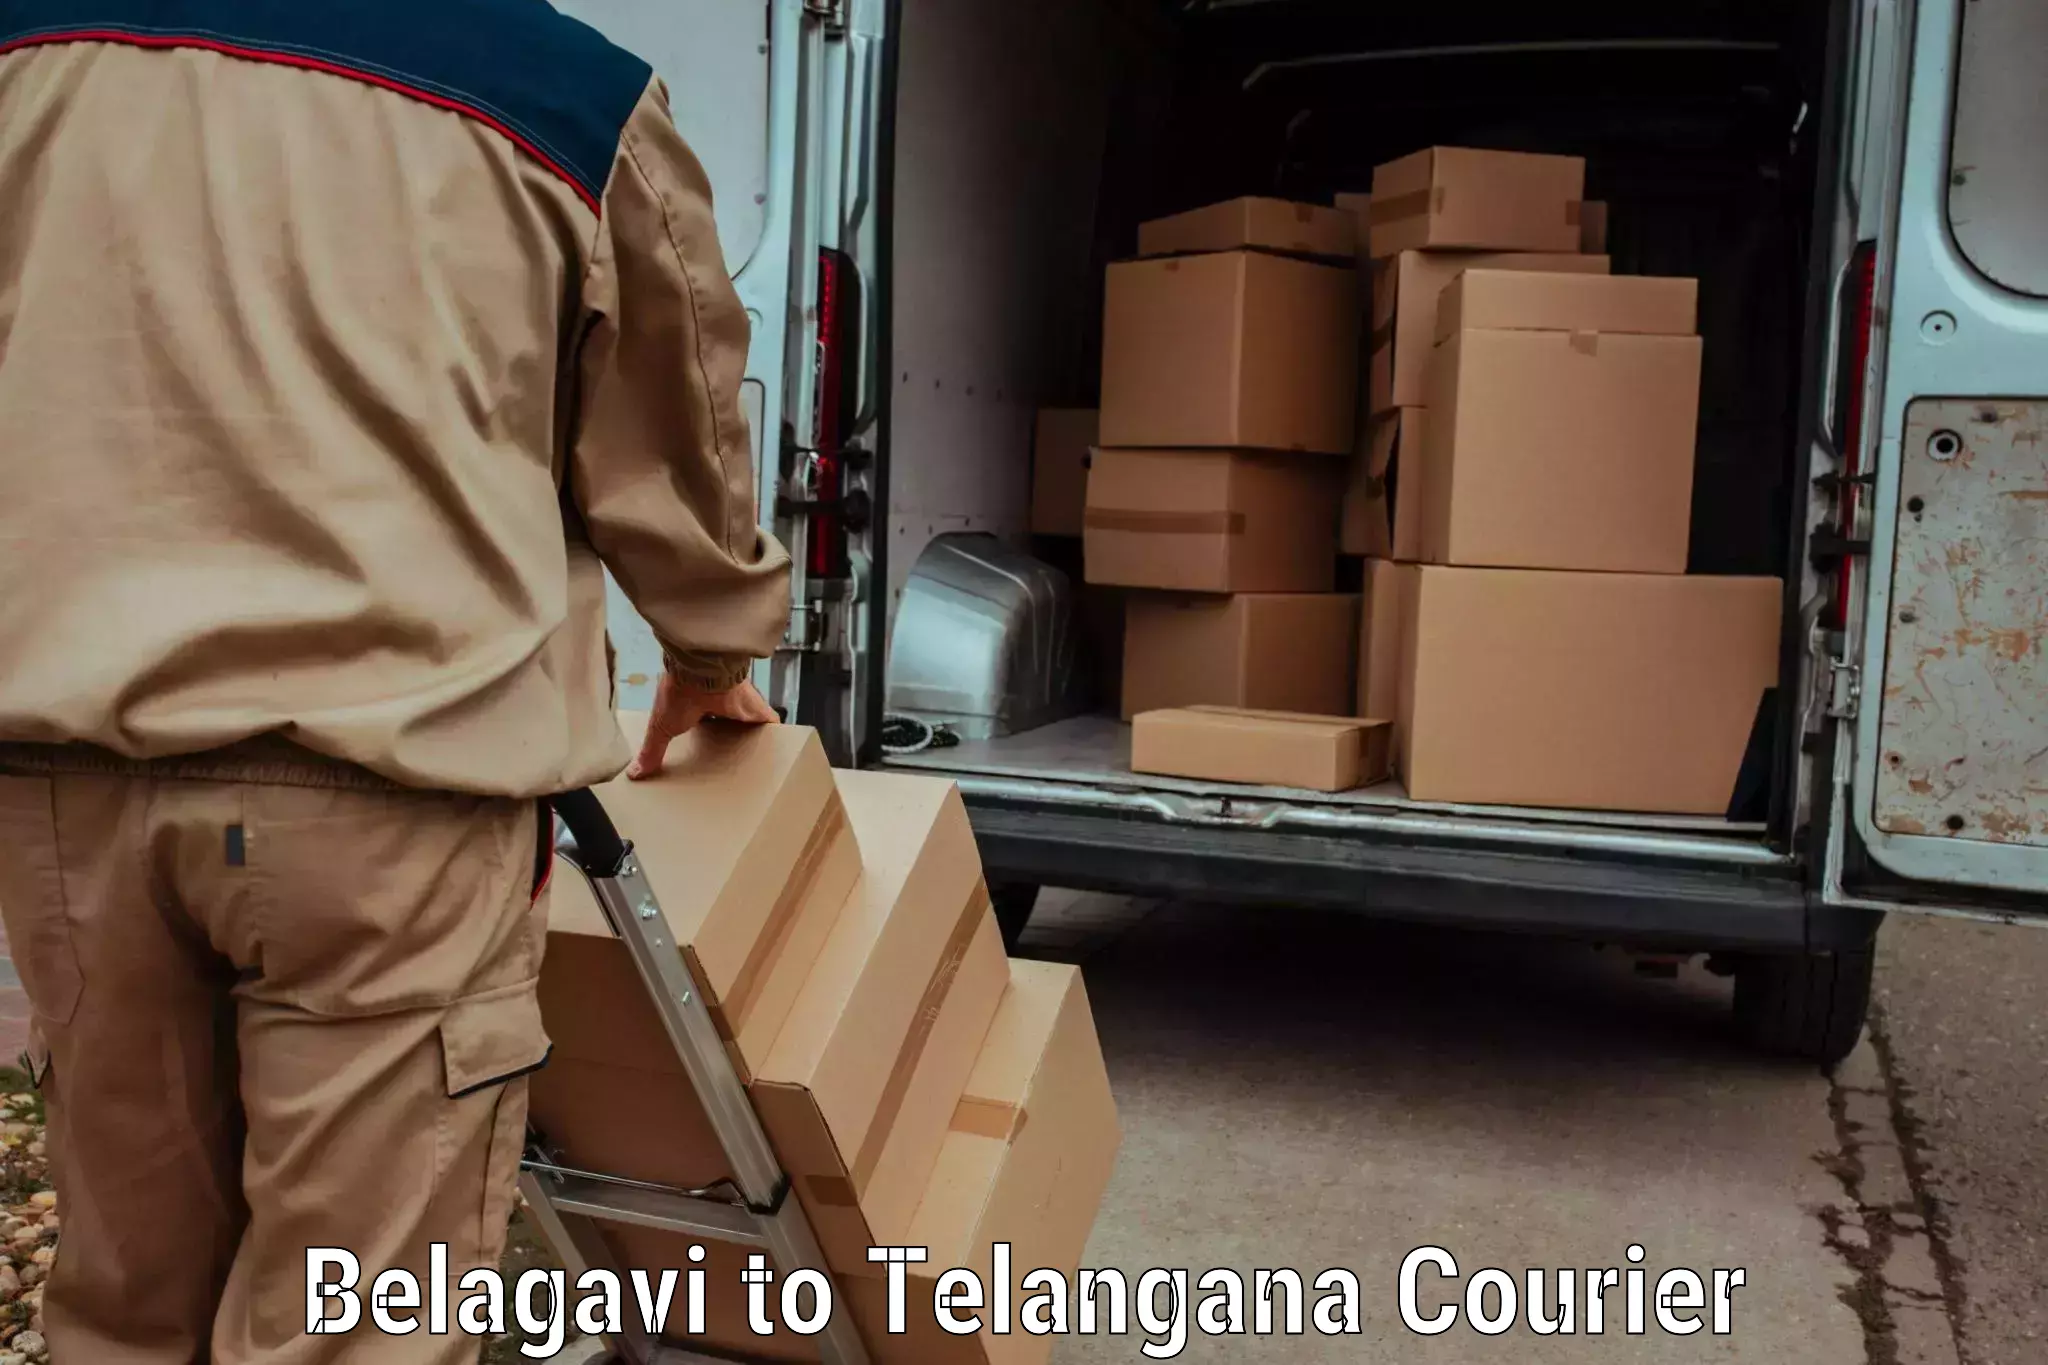 Expedited shipping methods Belagavi to Adilabad